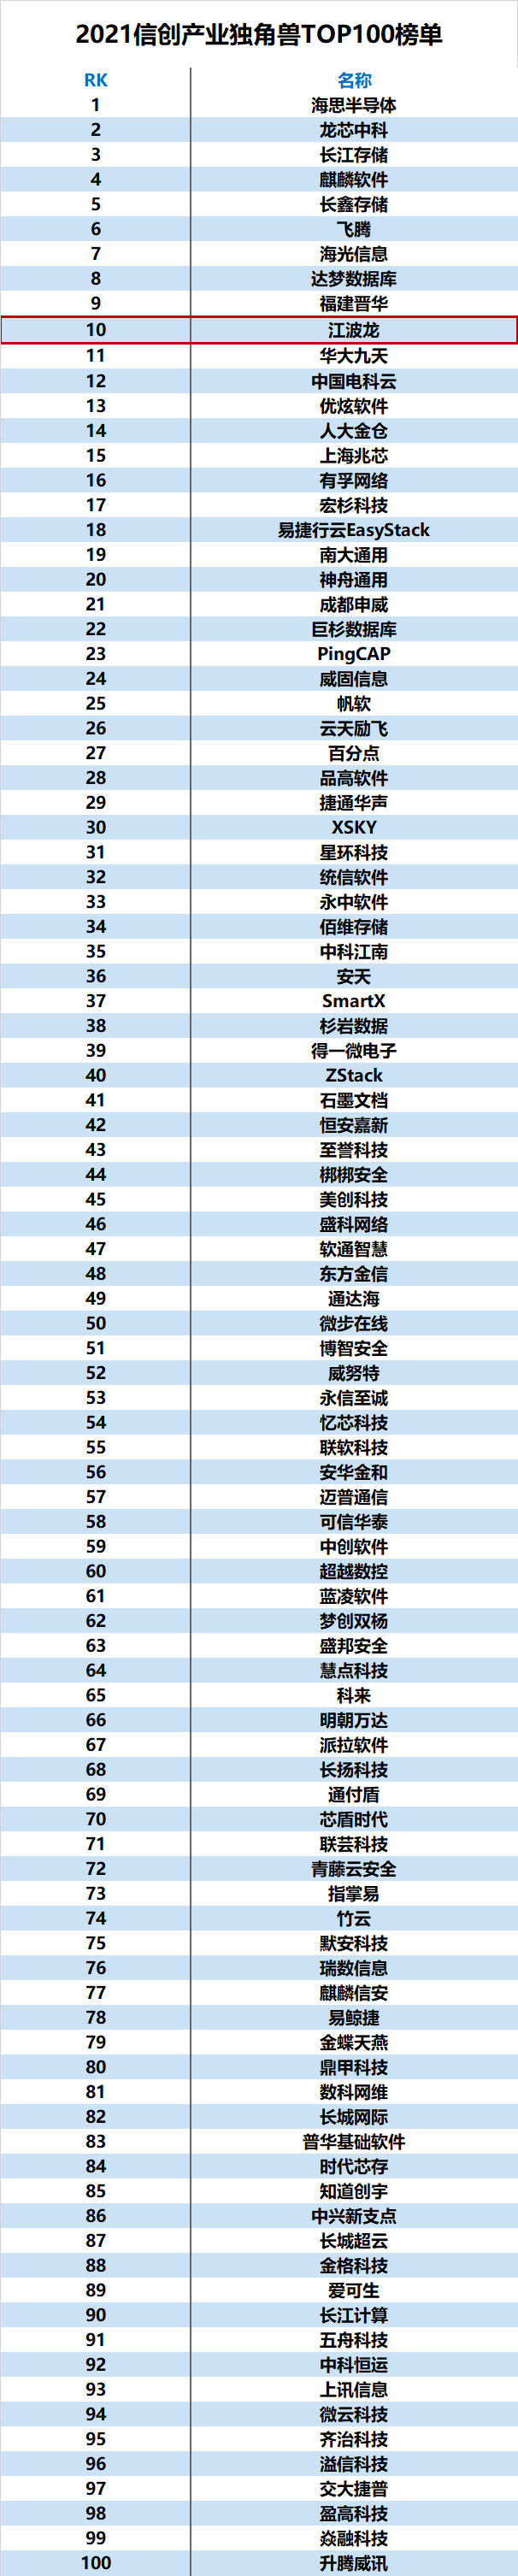 江波龙跻身2021信创产业独角兽TOP100榜单前十强